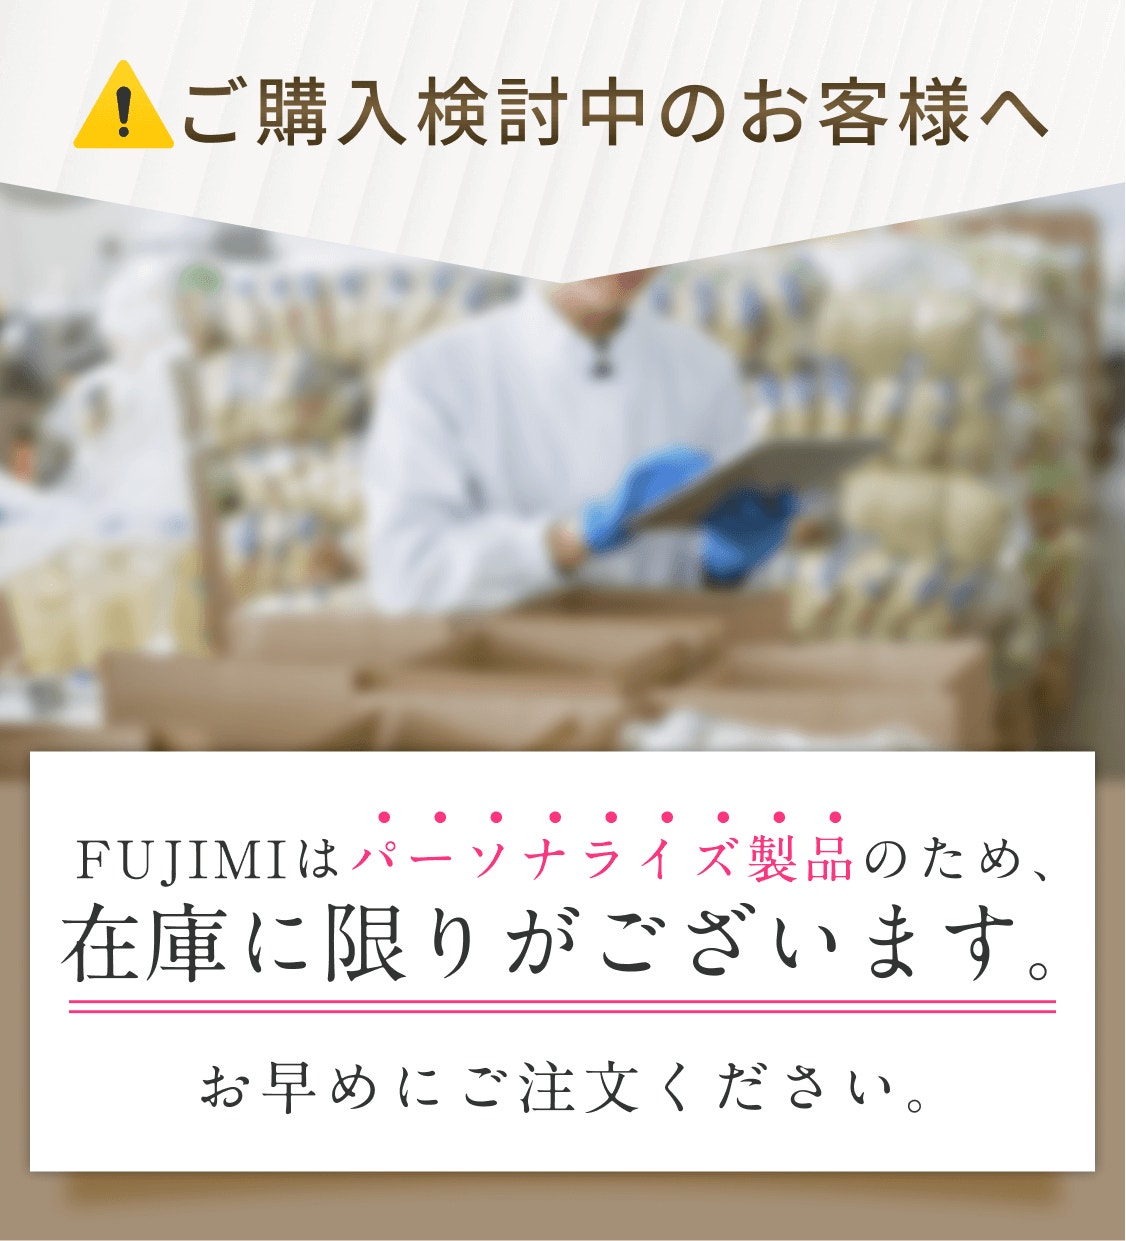 ご購入検討中のお客様へ FUJIMIはパーソナライズ製品のため、在庫に限りがございます。 お早めにご注文ください。